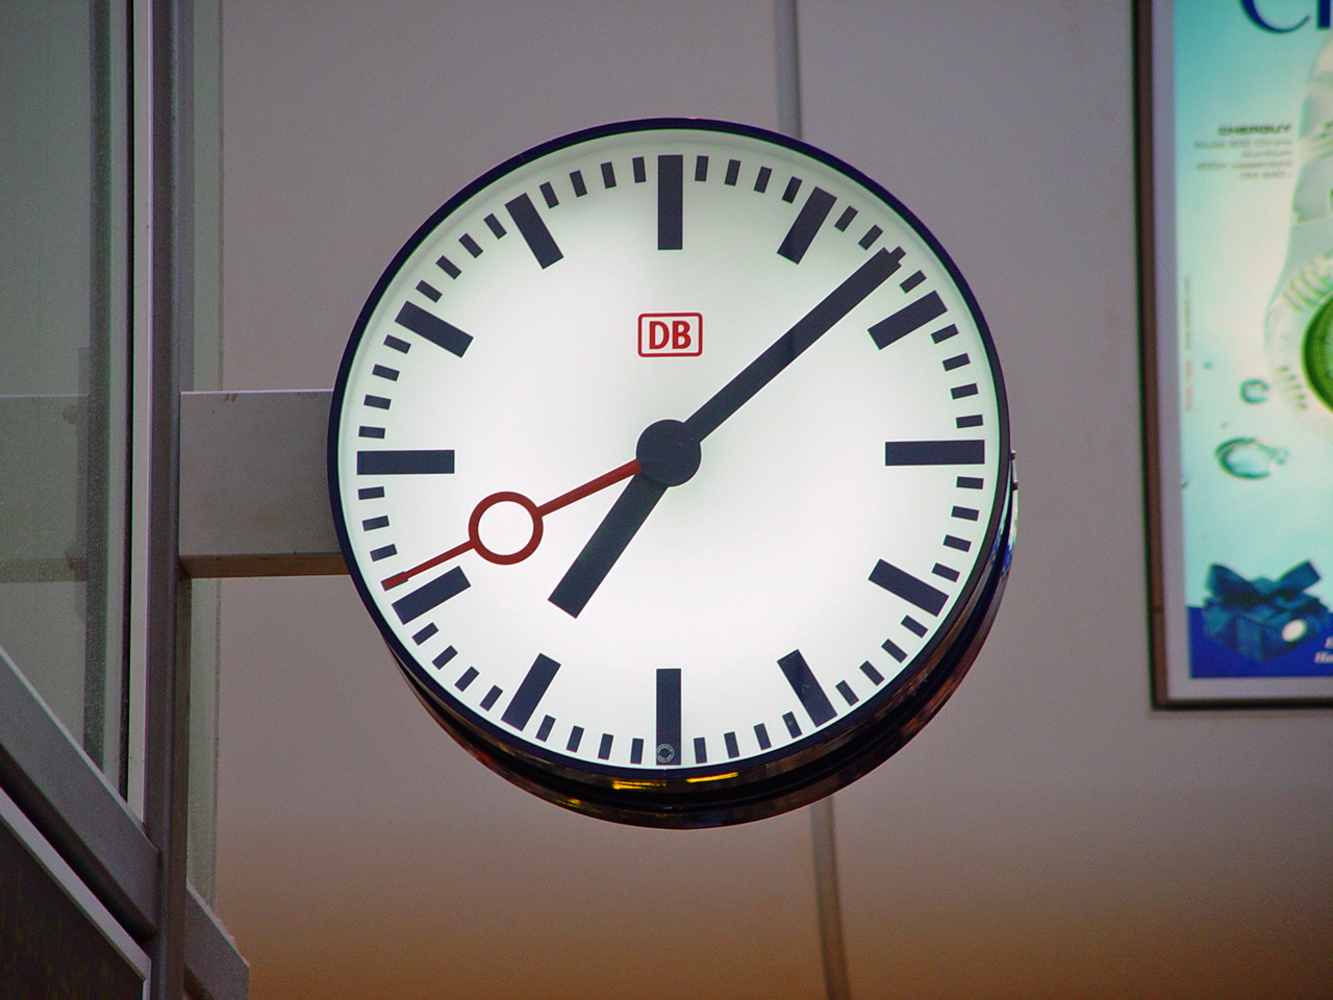 A typical Deutsche Bahn railway station clock